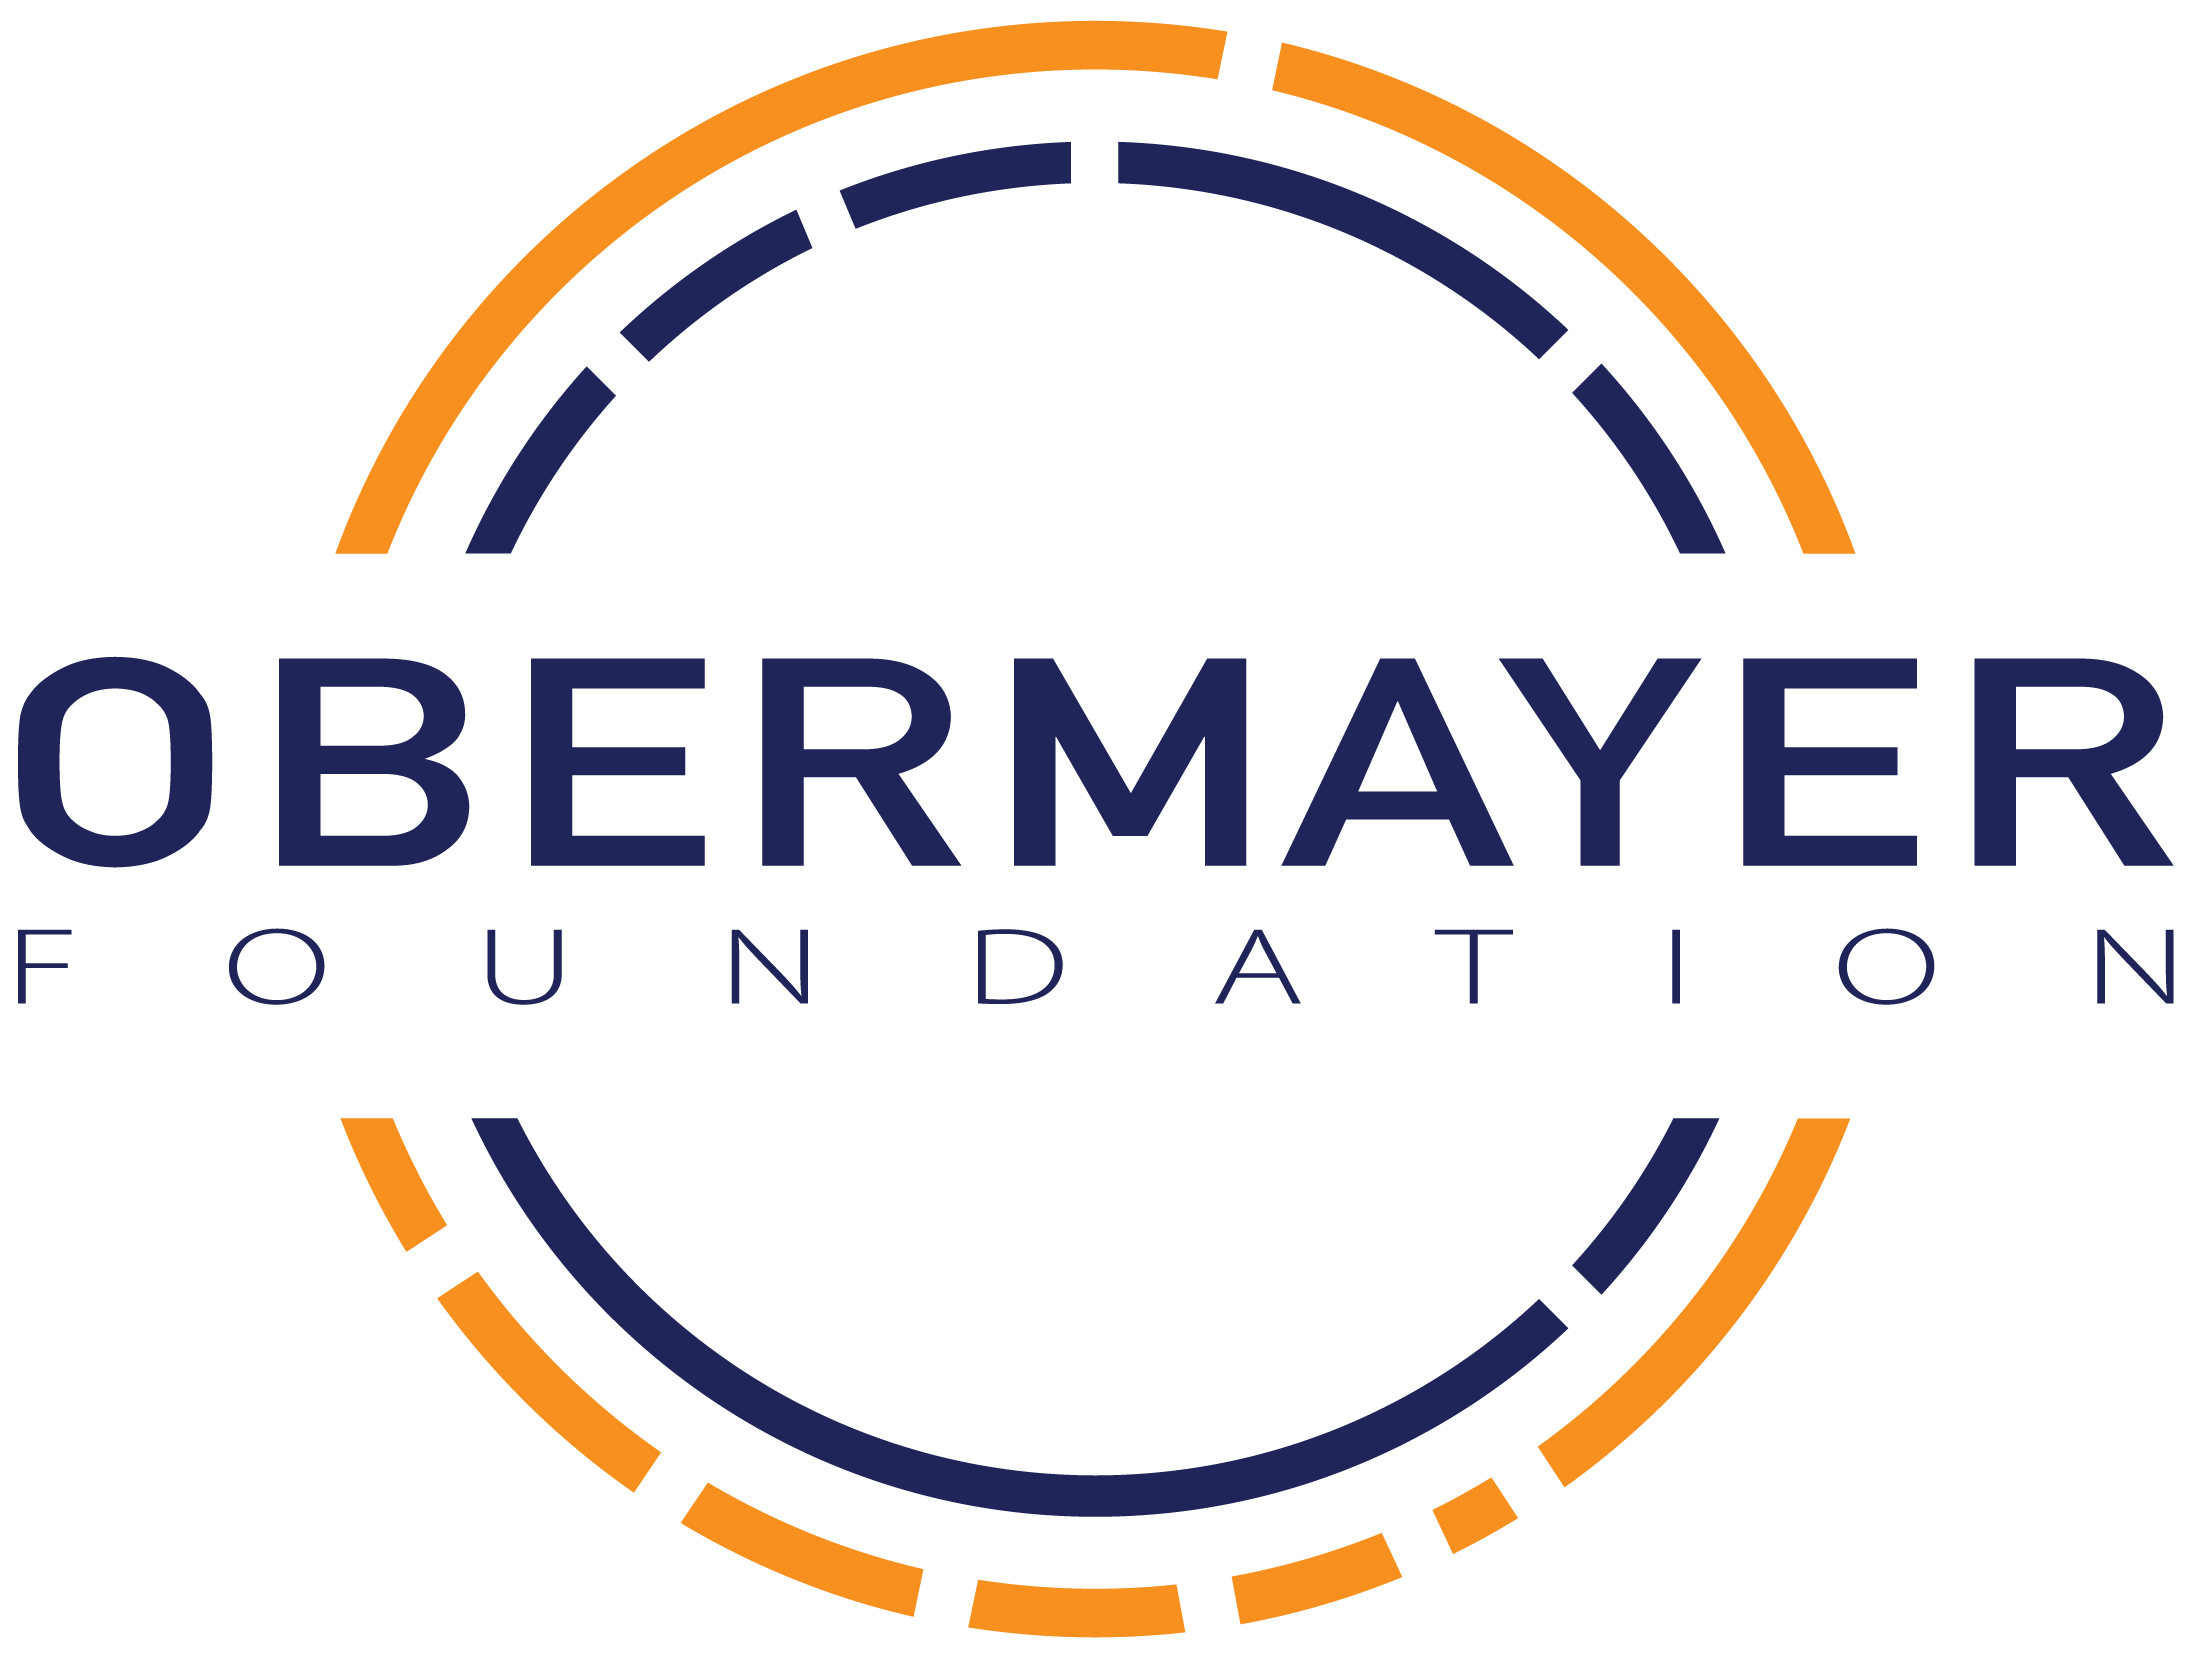 The Obermayer Foundation